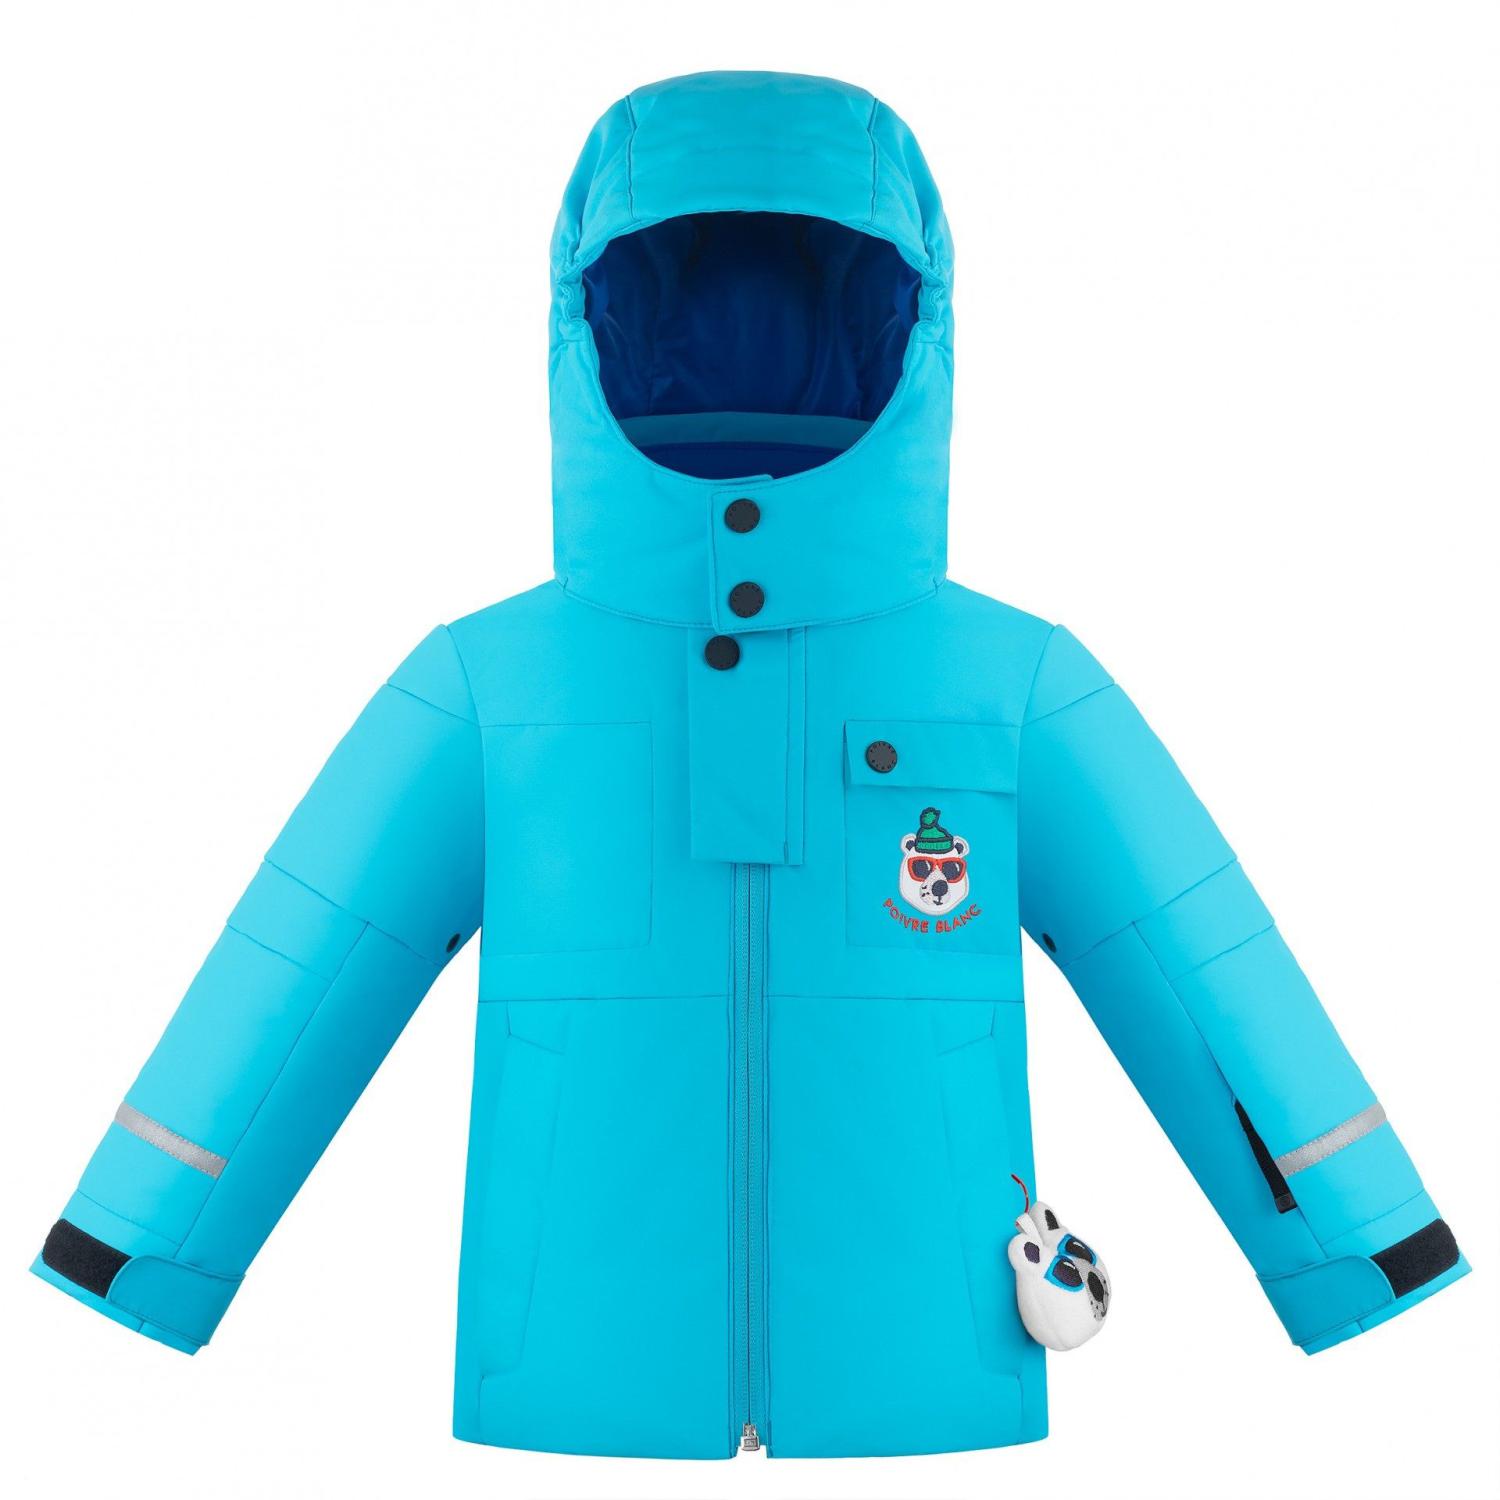 Куртка горнолыжная Poivre Blanc 19-20 Ski Jacket Aqua Blue куртка горнолыжная alpha endless m 1131 electric black